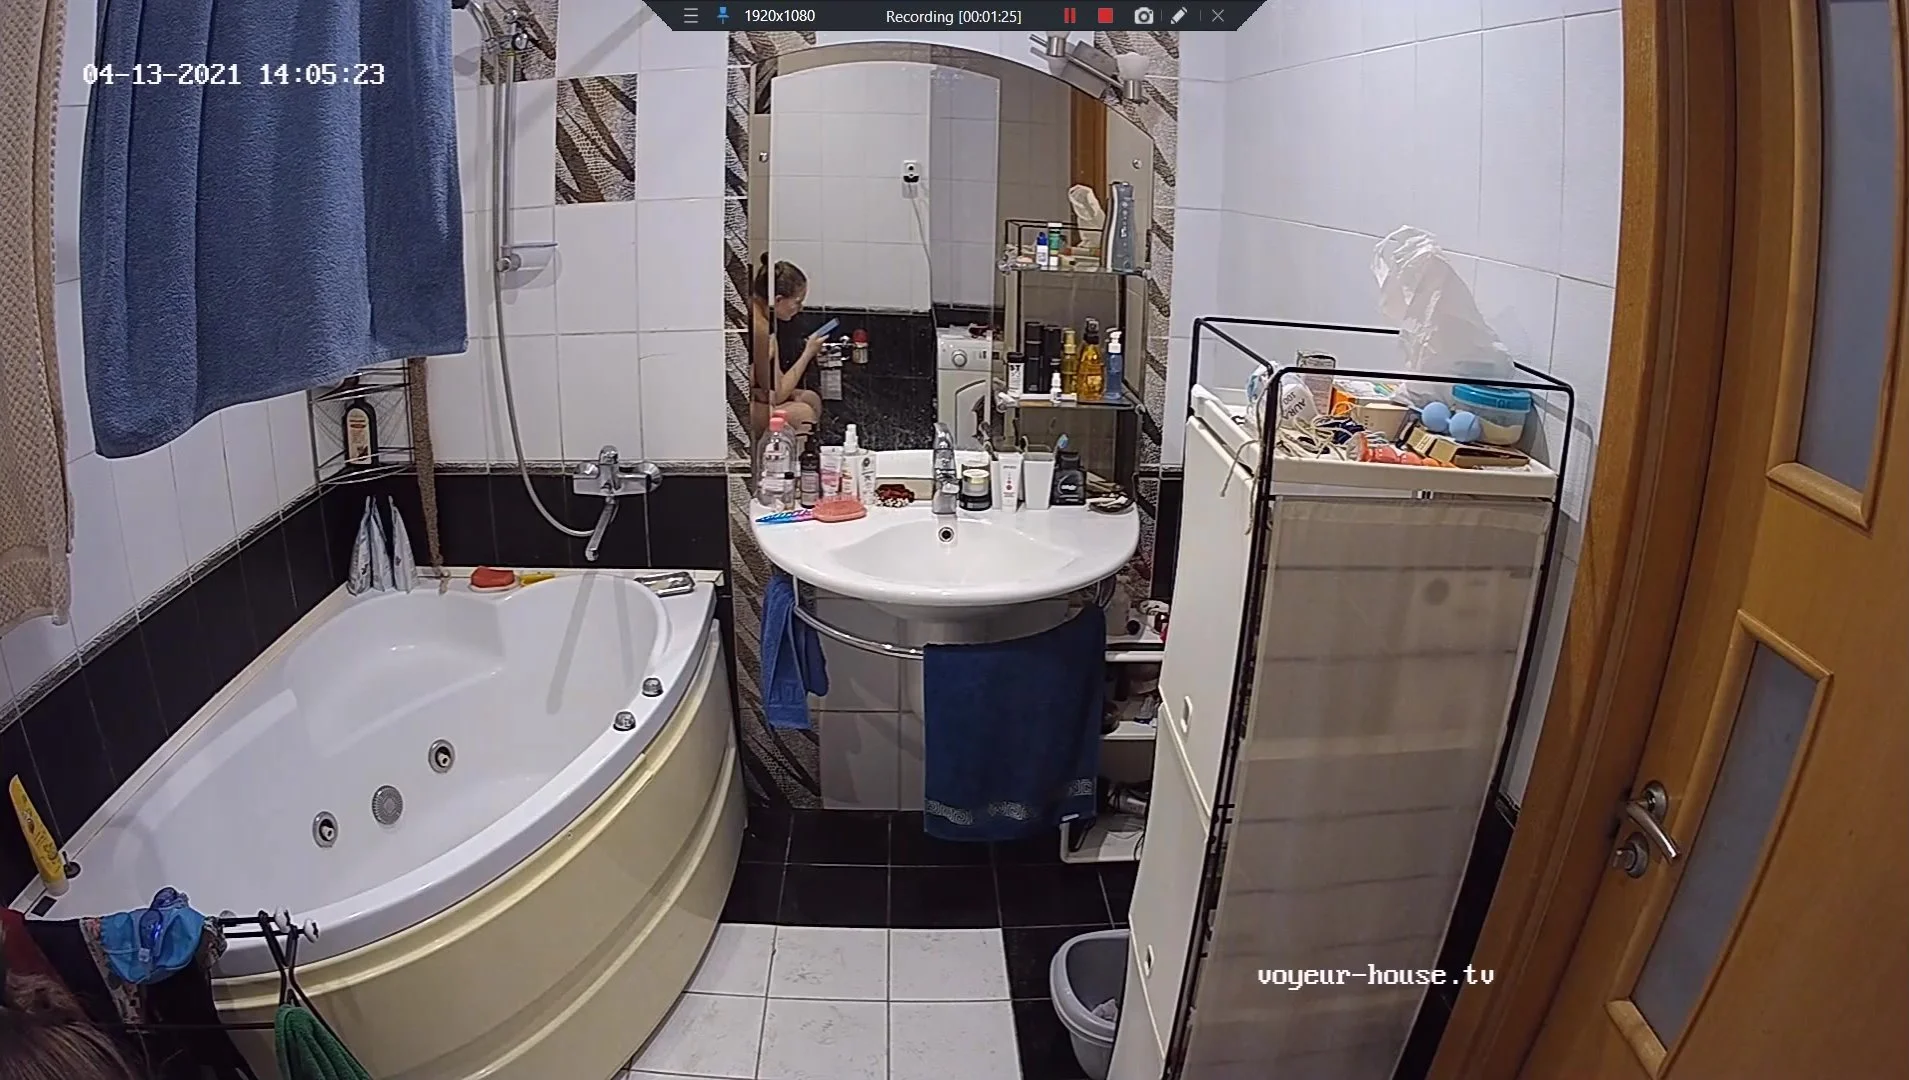 shower room russian voyeur Sex Images Hq